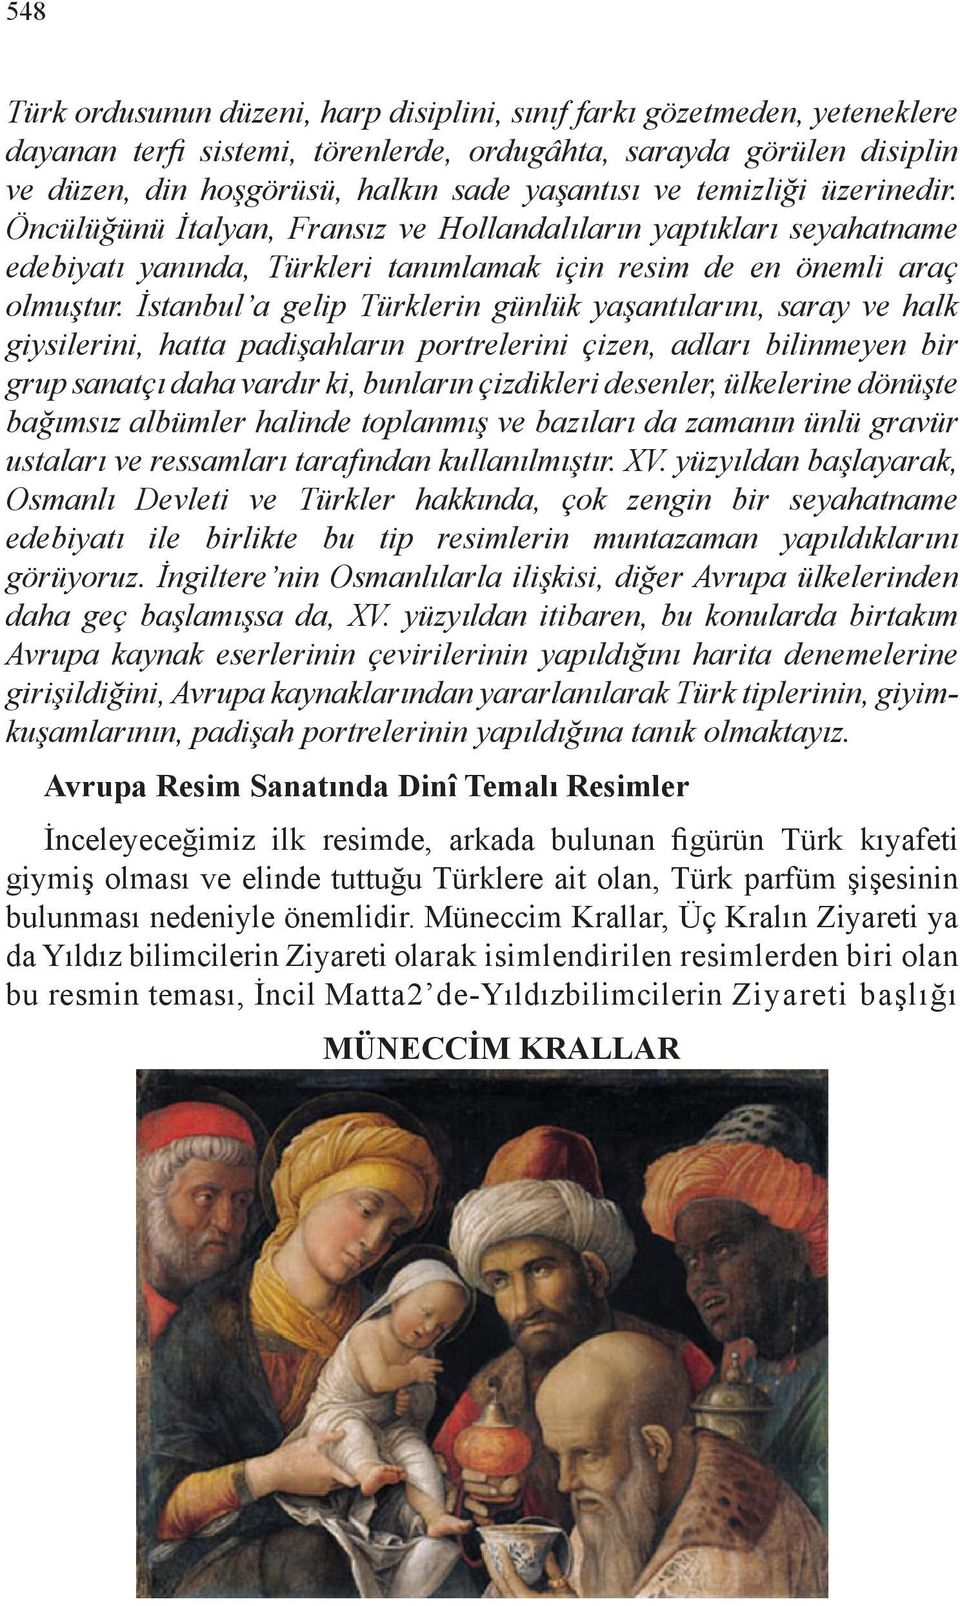 İstanbul a gelip Türklerin günlük yaşantılarını, saray ve halk giysilerini, hatta padişahların portrelerini çizen, adları bilinmeyen bir grup sanatçı daha vardır ki, bunların çizdikleri desenler,